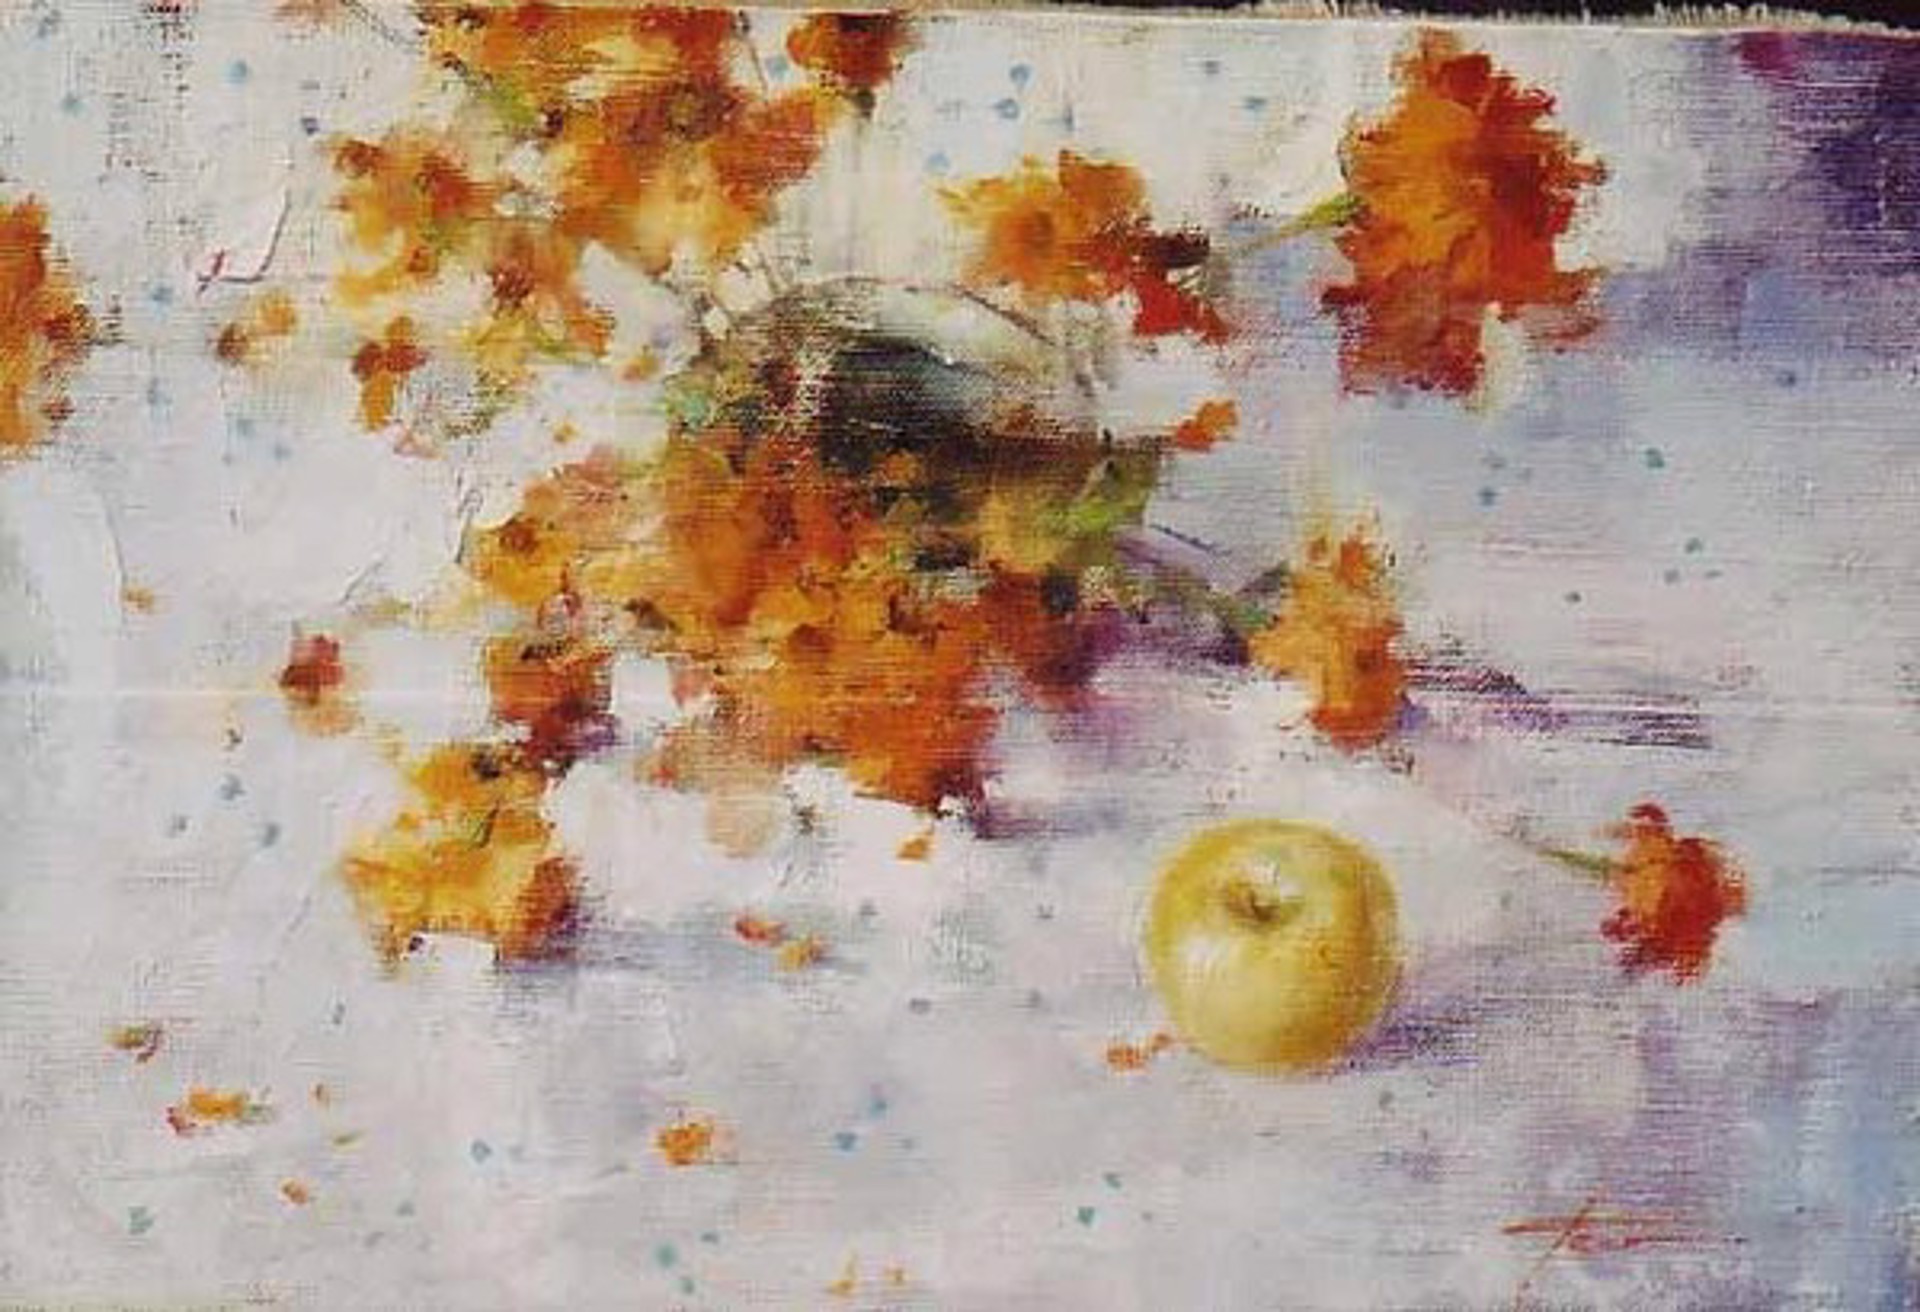 Flowers and Apple by Yana Golubyatnikova